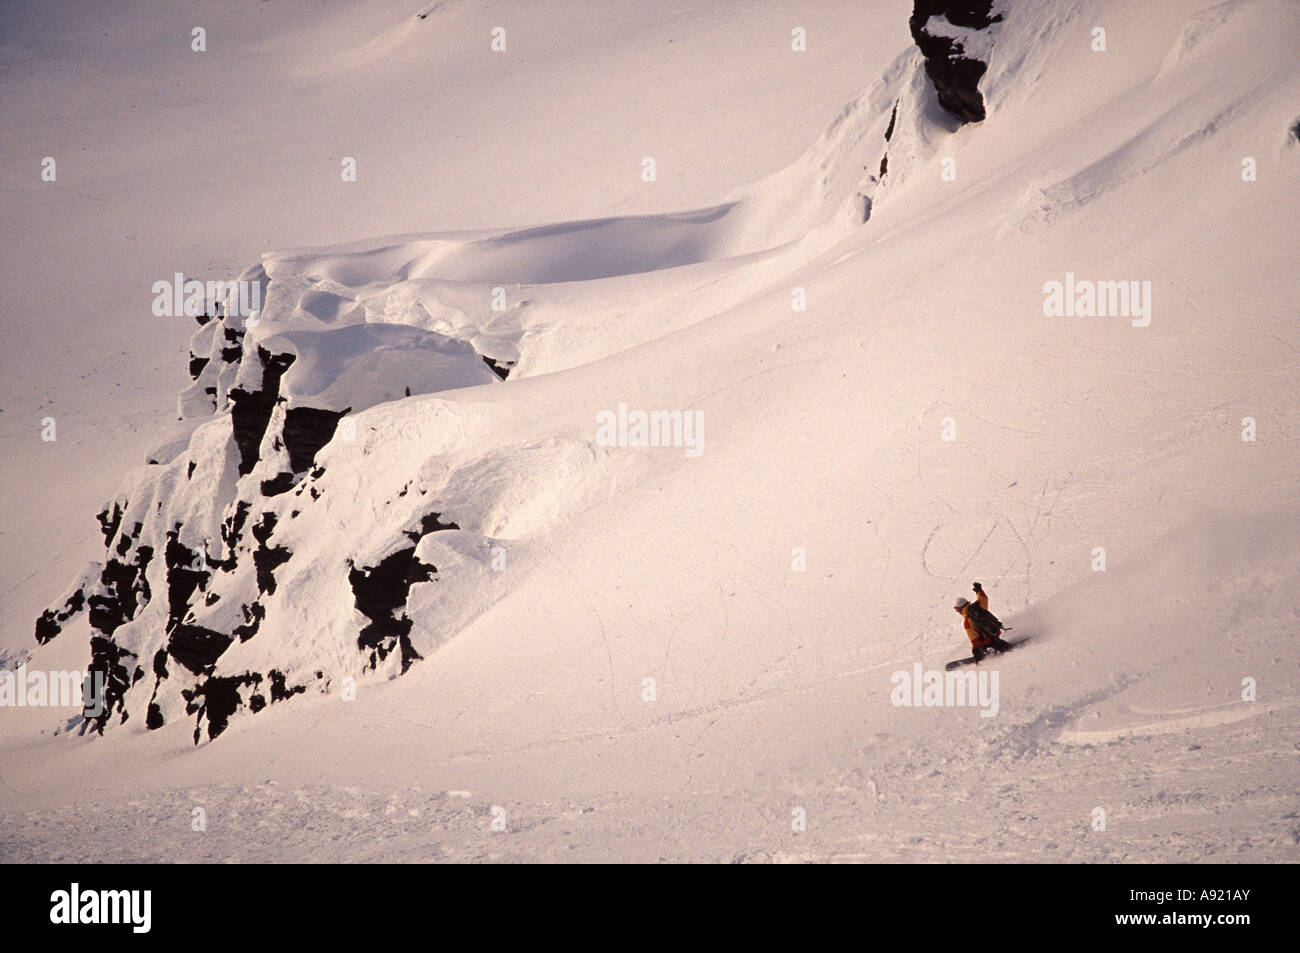 Jamie Weeks snowboarding Valdez Alaska Valdez Heli Ski Guides Stock Photo